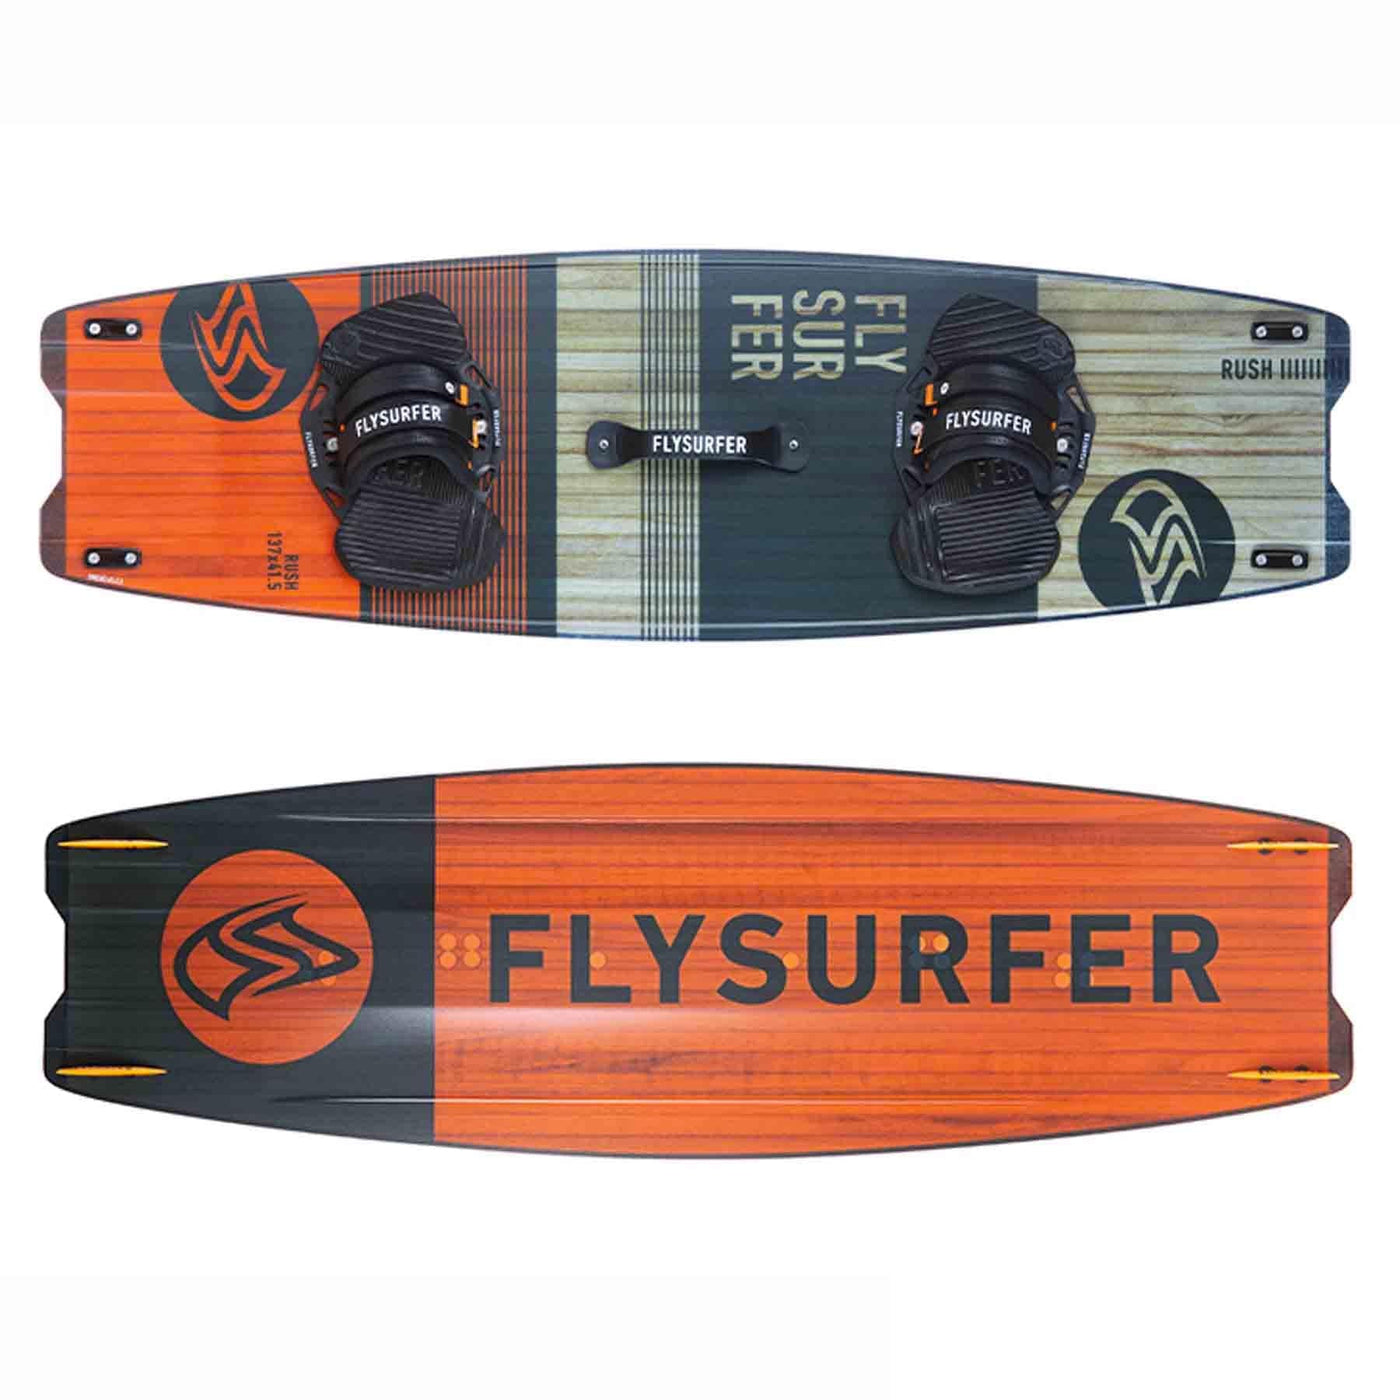 Flysurfer Rush 2 Kiteboard with Pads And Straps FLYSURFER